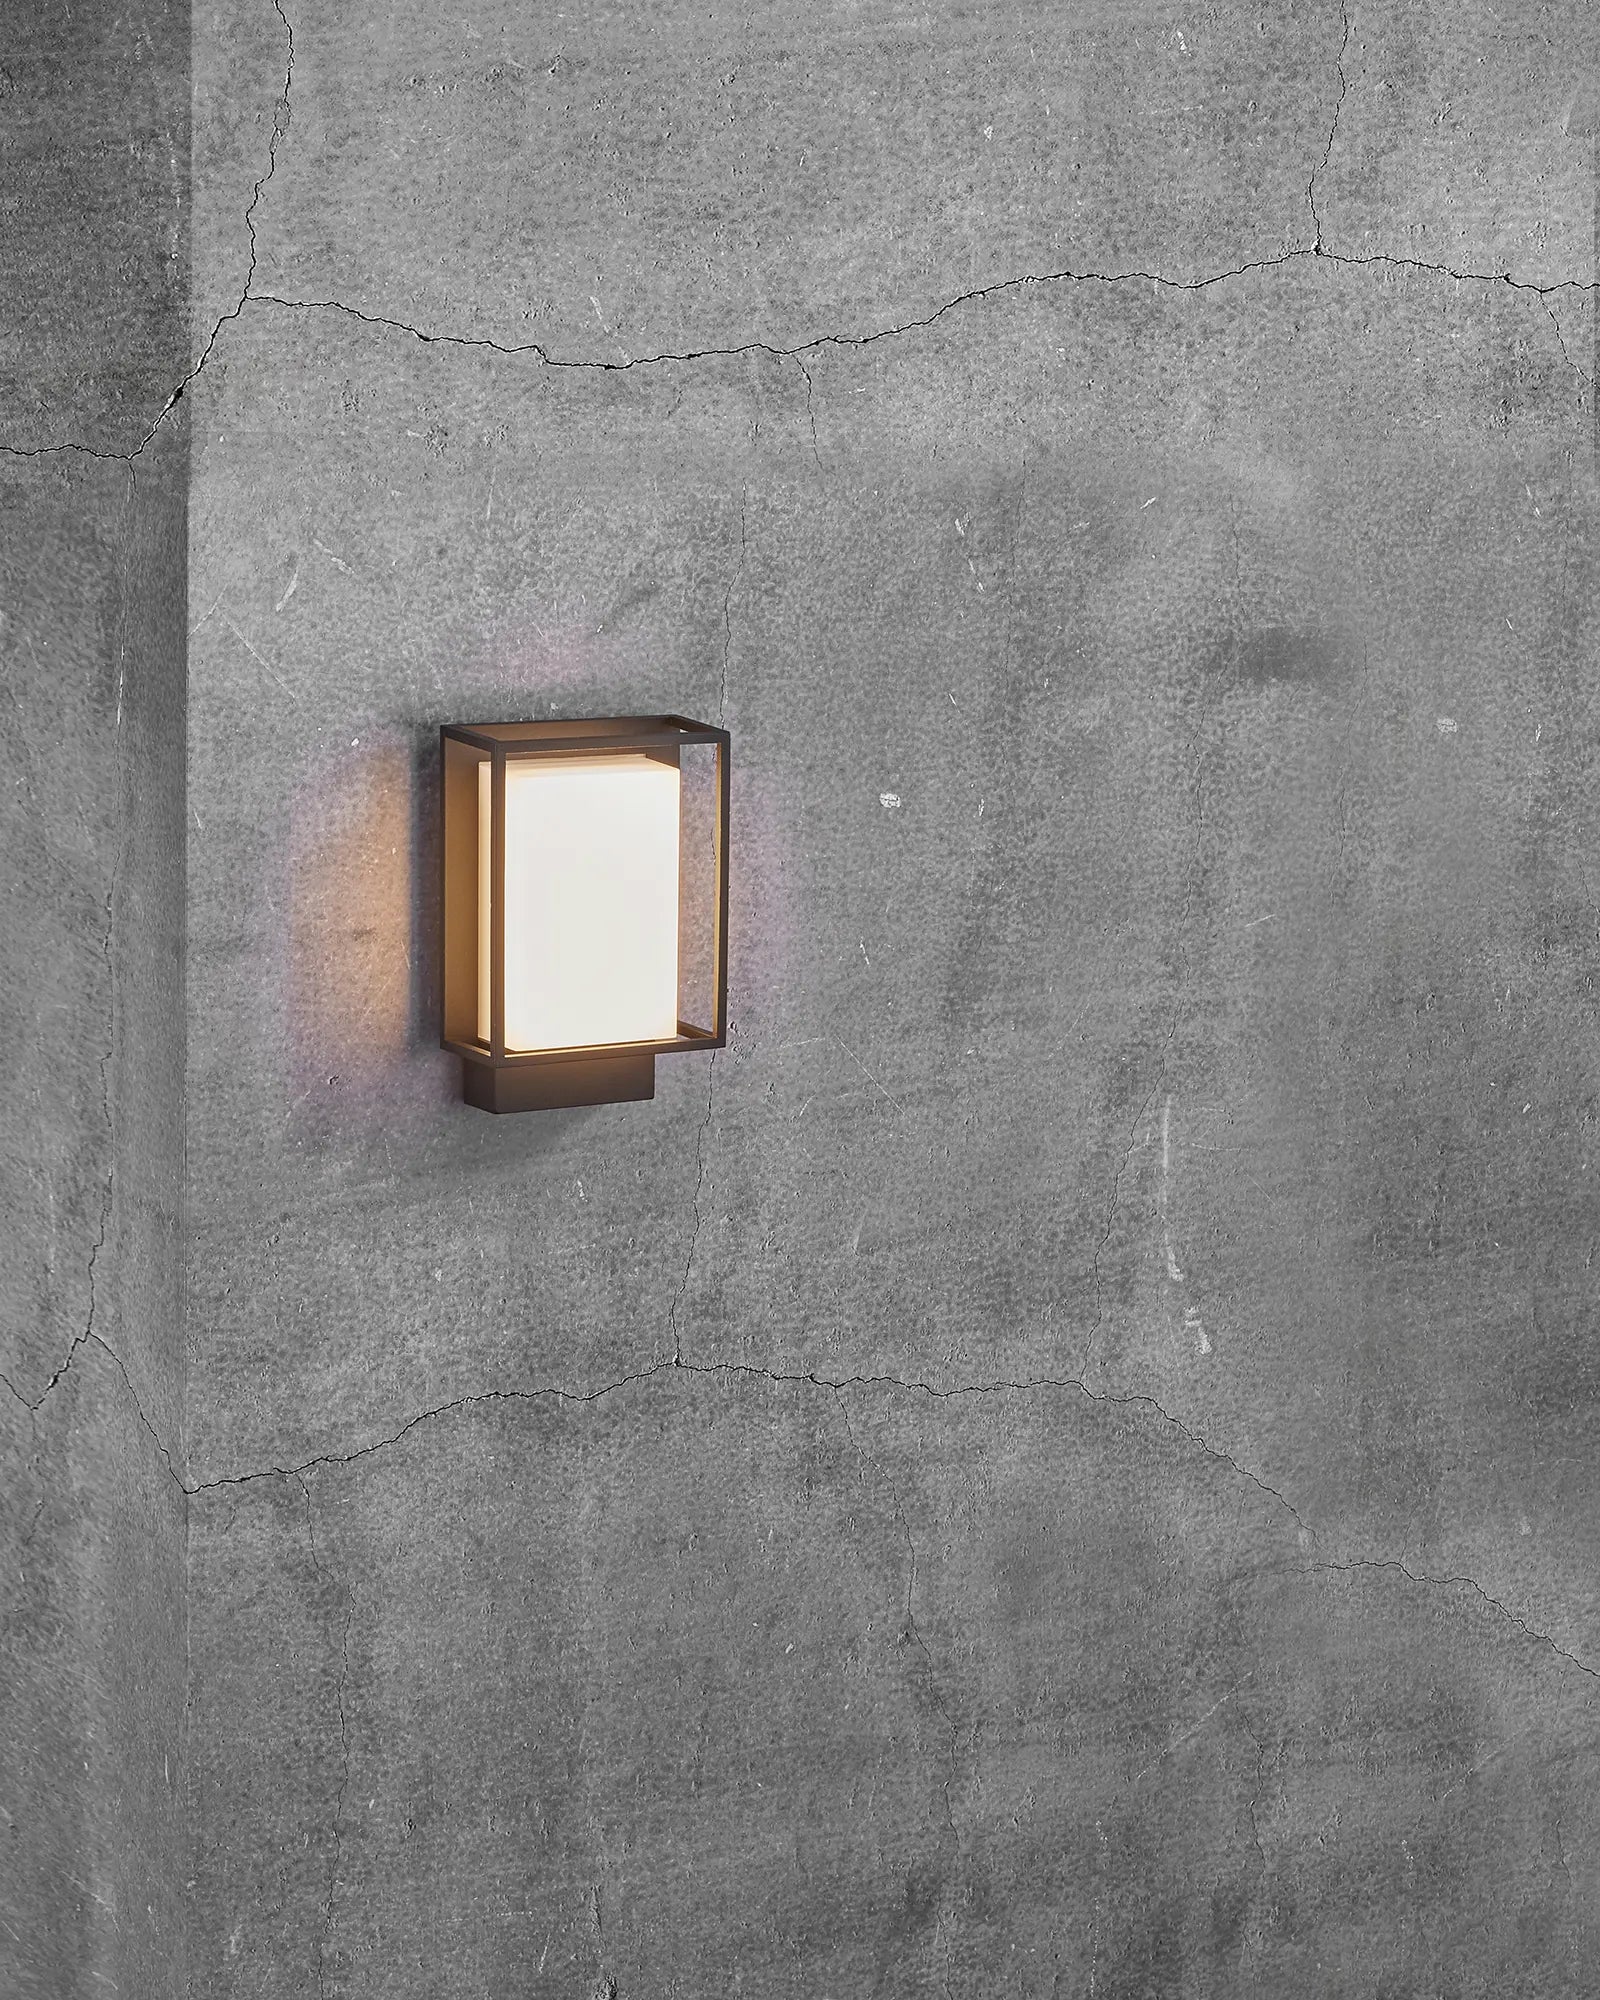 Nestor modern Scandinavian outdoor wall light on concrete wall